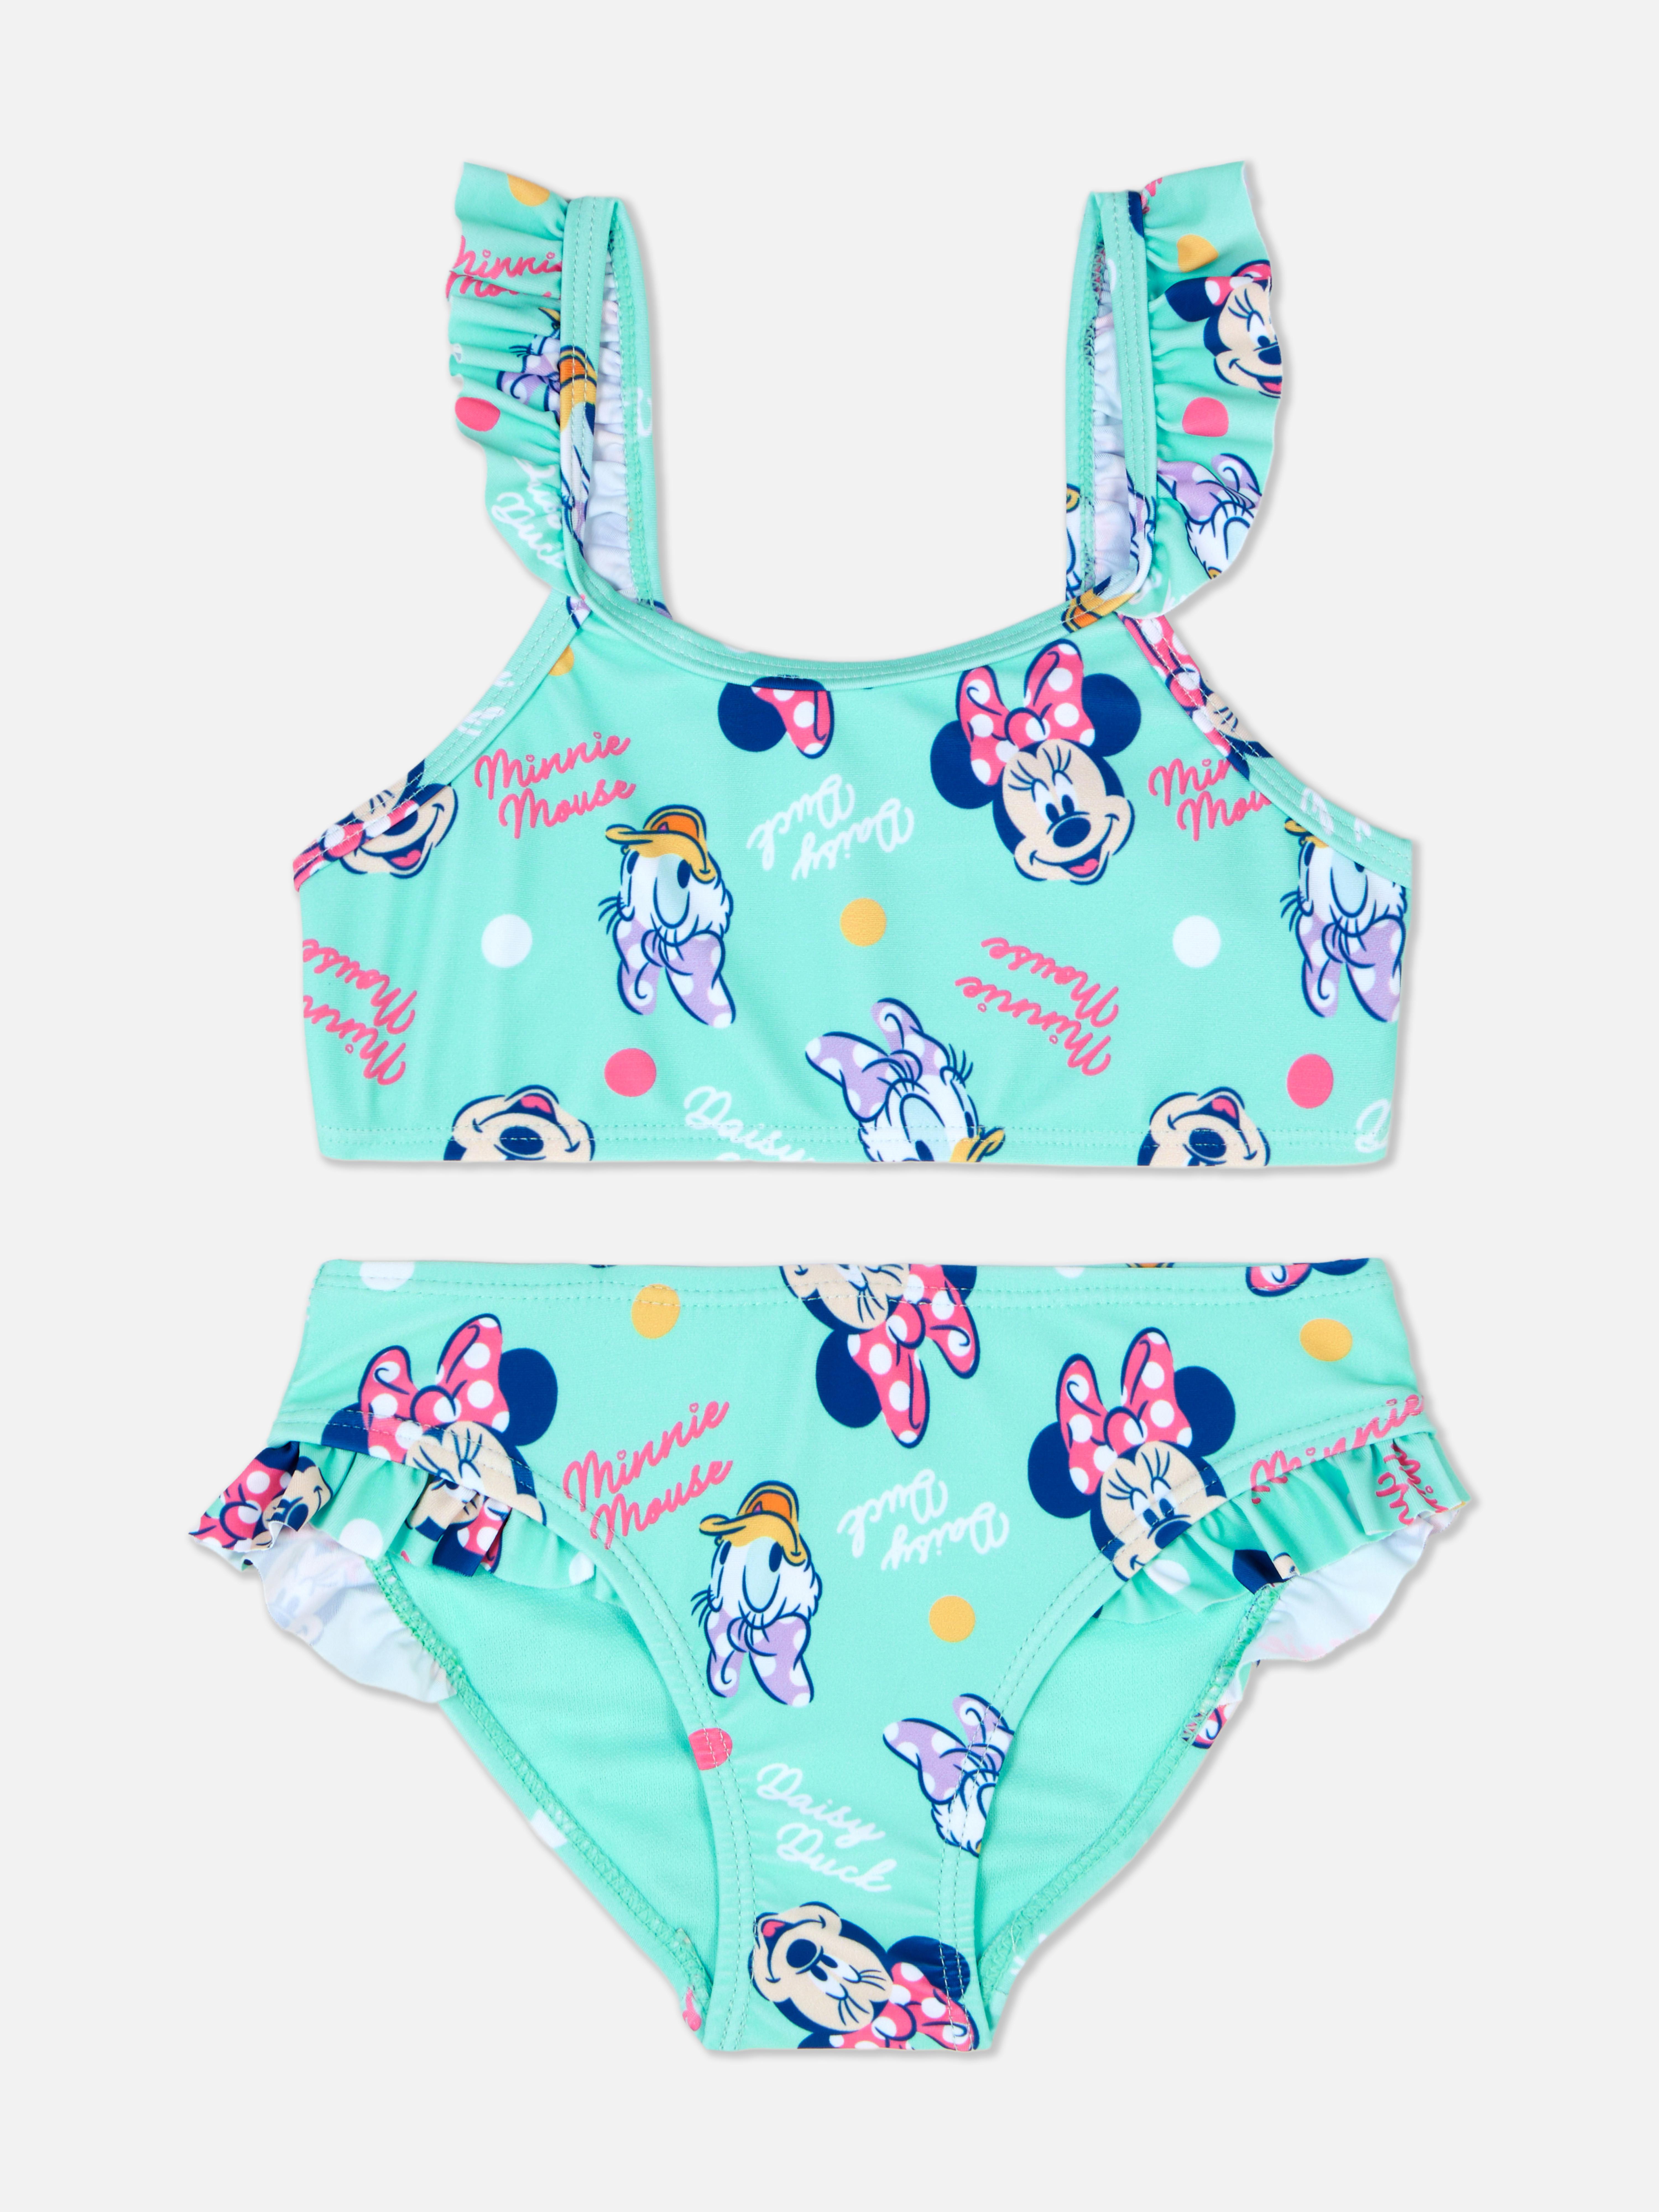 Disney’s Minnie Mouse and Daisy Duck Bikini